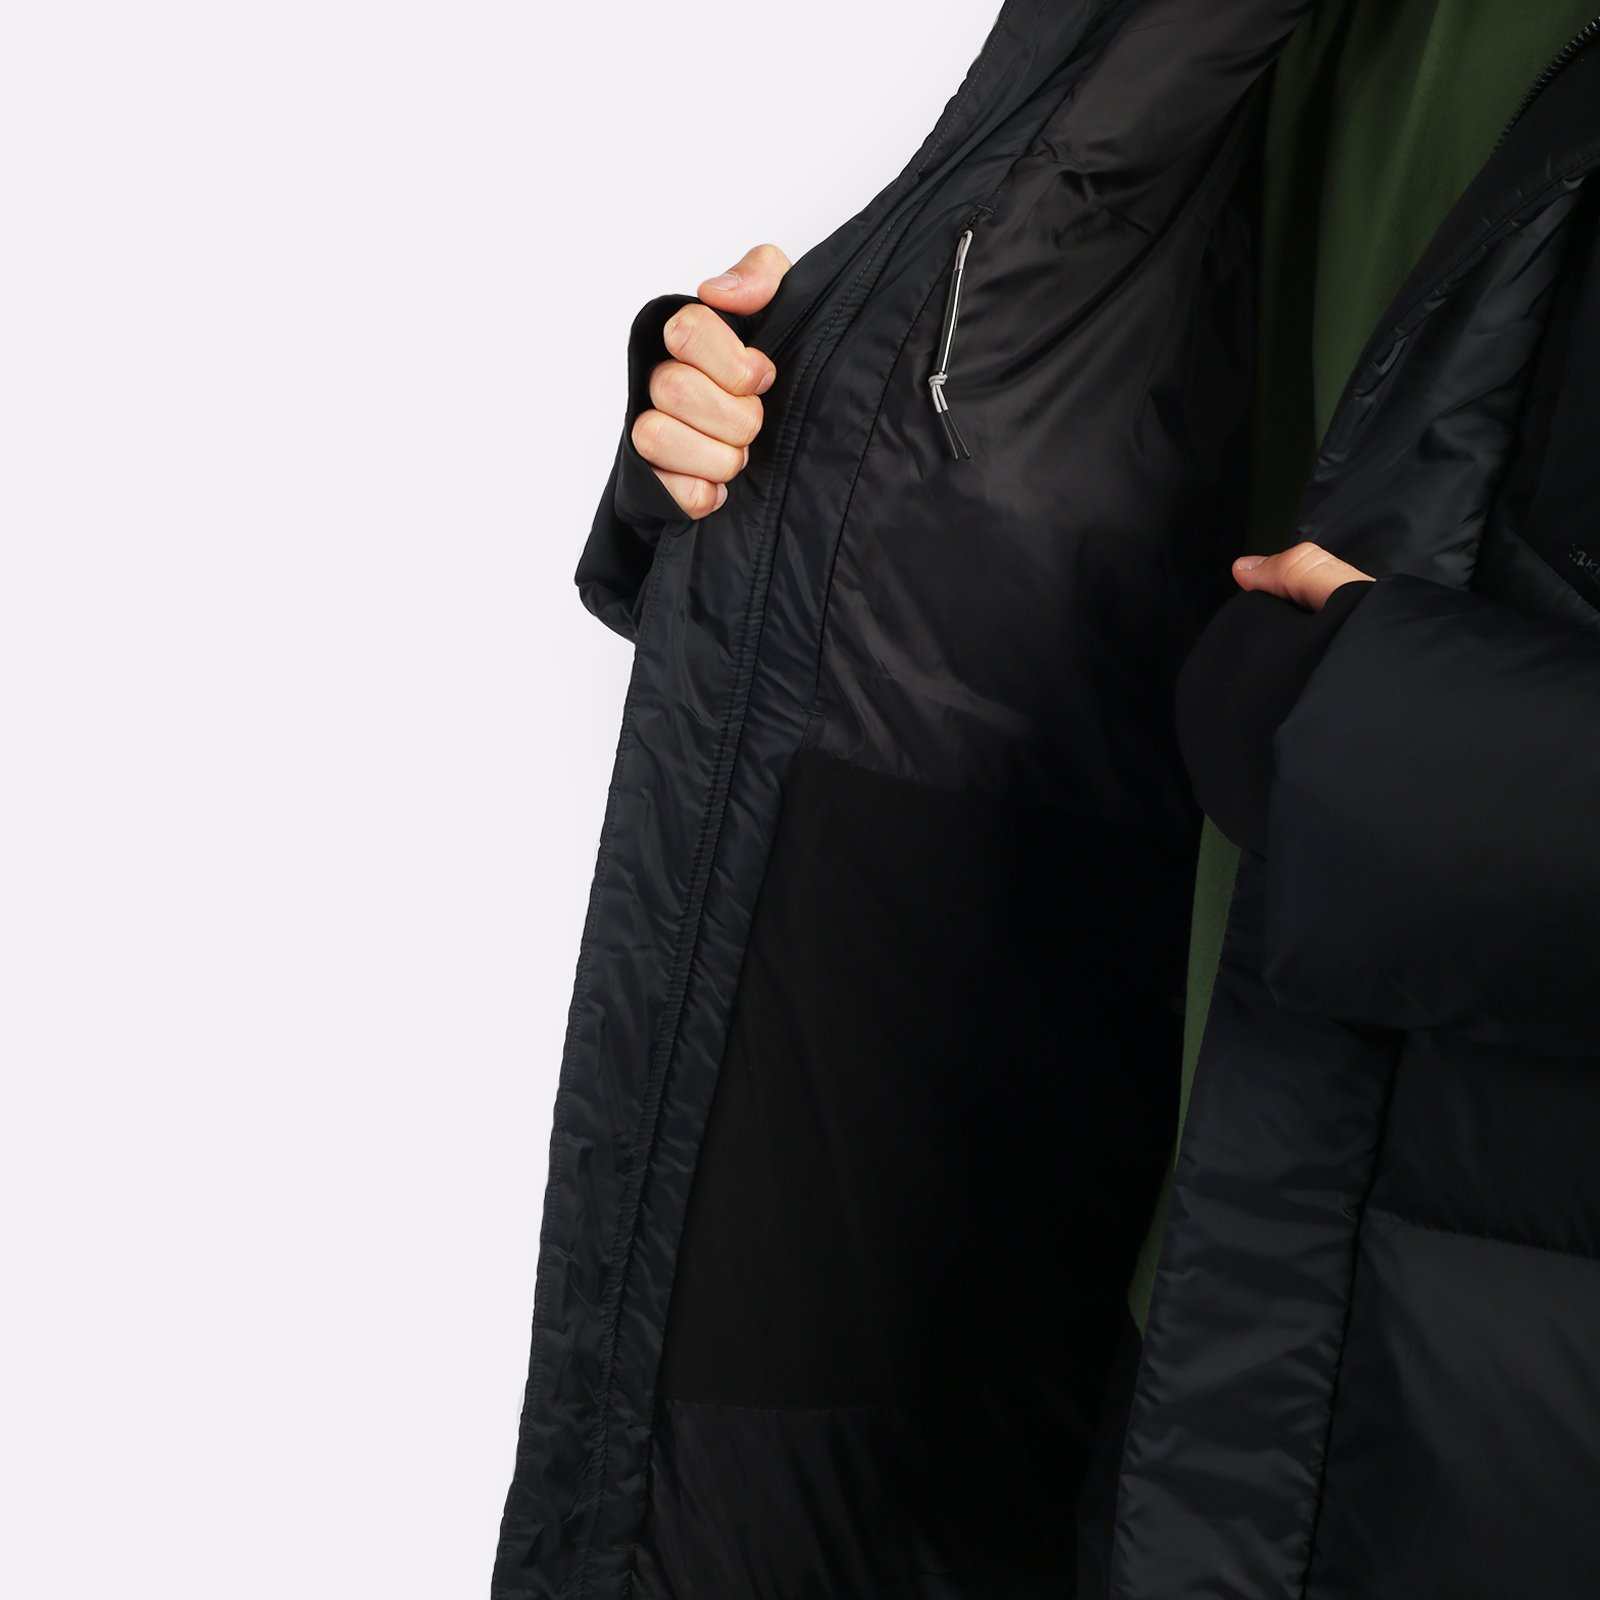 мужская куртка KRAKATAU Aitken  (Qm437-1-черный)  - цена, описание, фото 5